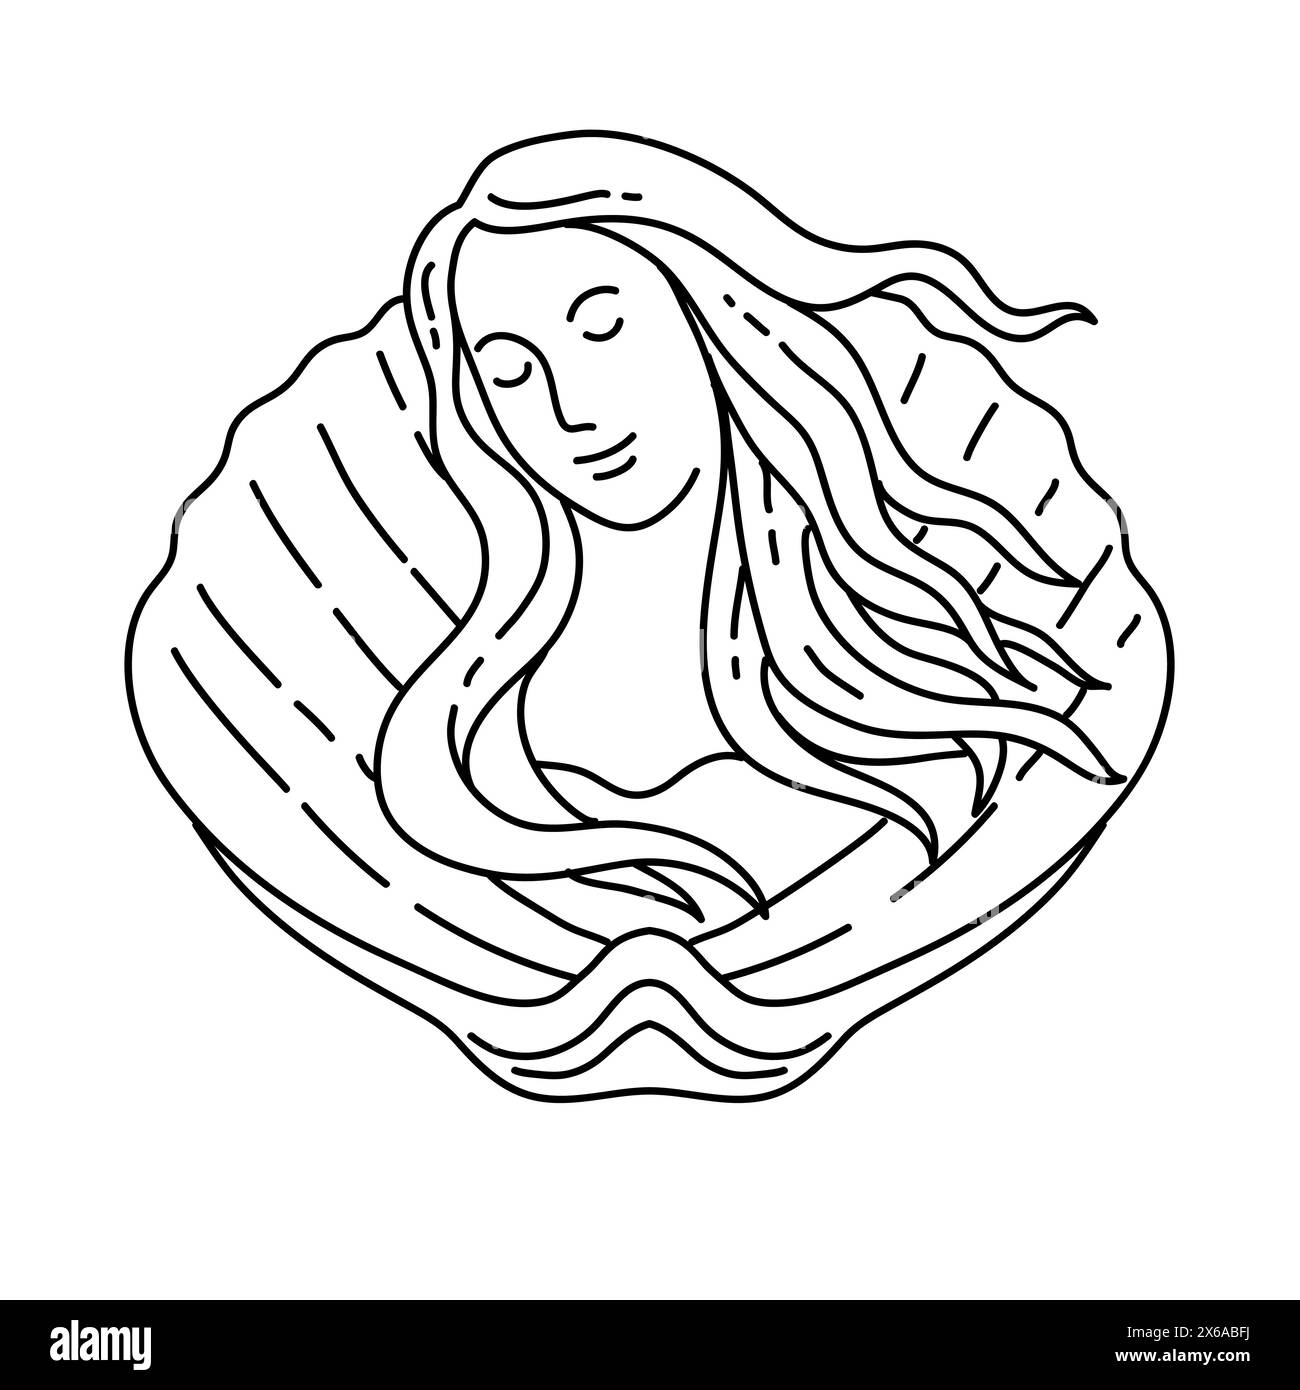 Illustrazione monocromatica di Venere, sirena o sirena con lunghi capelli fluenti su conchiglia di vongole vista frontale realizzata in stile art-line monolina. Illustrazione Vettoriale